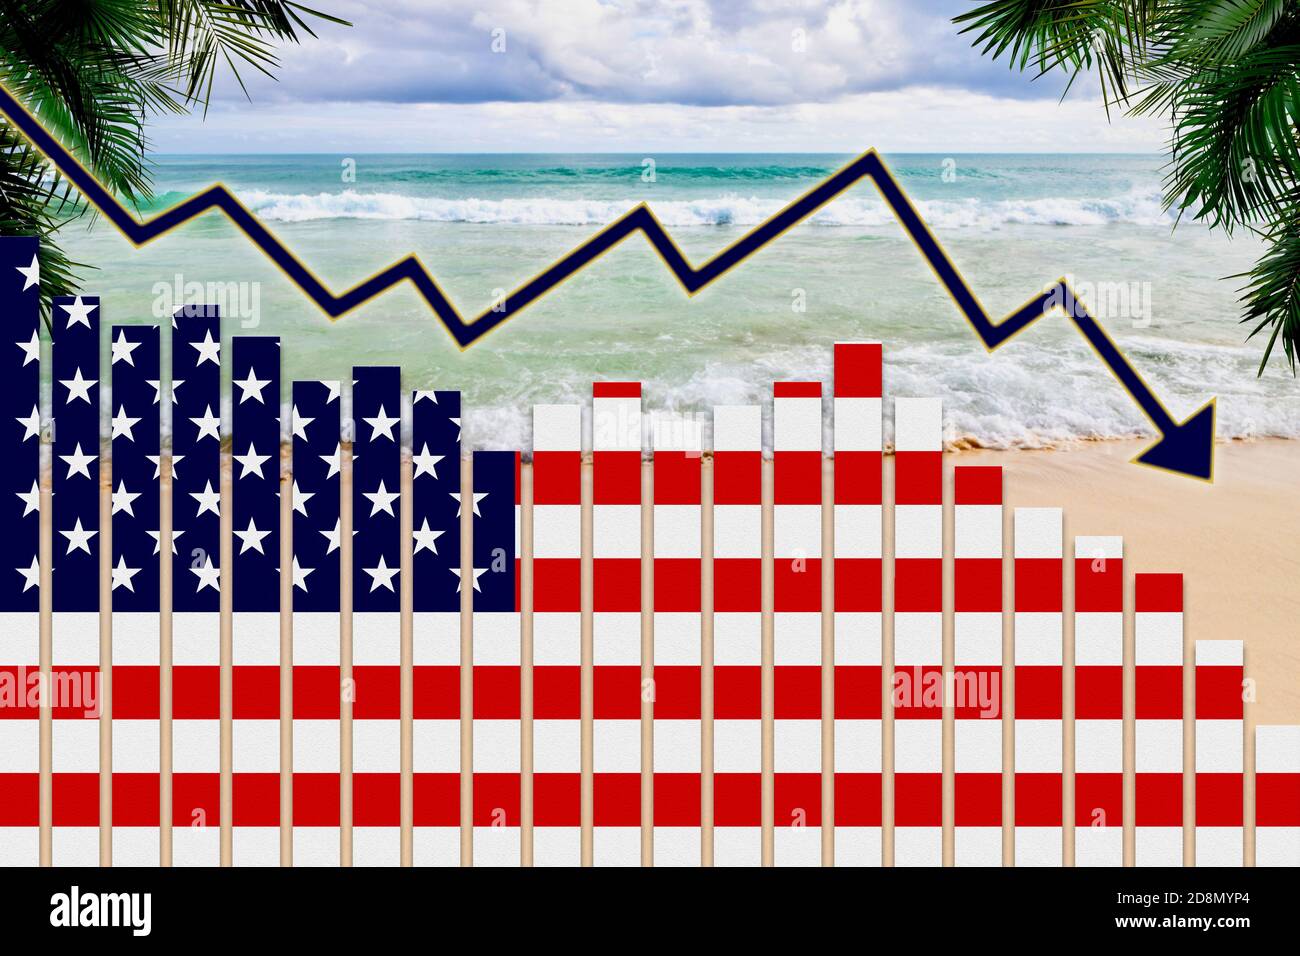 COVID-19 pandémie de coronavirus impact sur le concept de l'industrie touristique américaine montrant le fond de la plage avec le drapeau américain sur les graphiques à barres tendance à la baisse. Banque D'Images